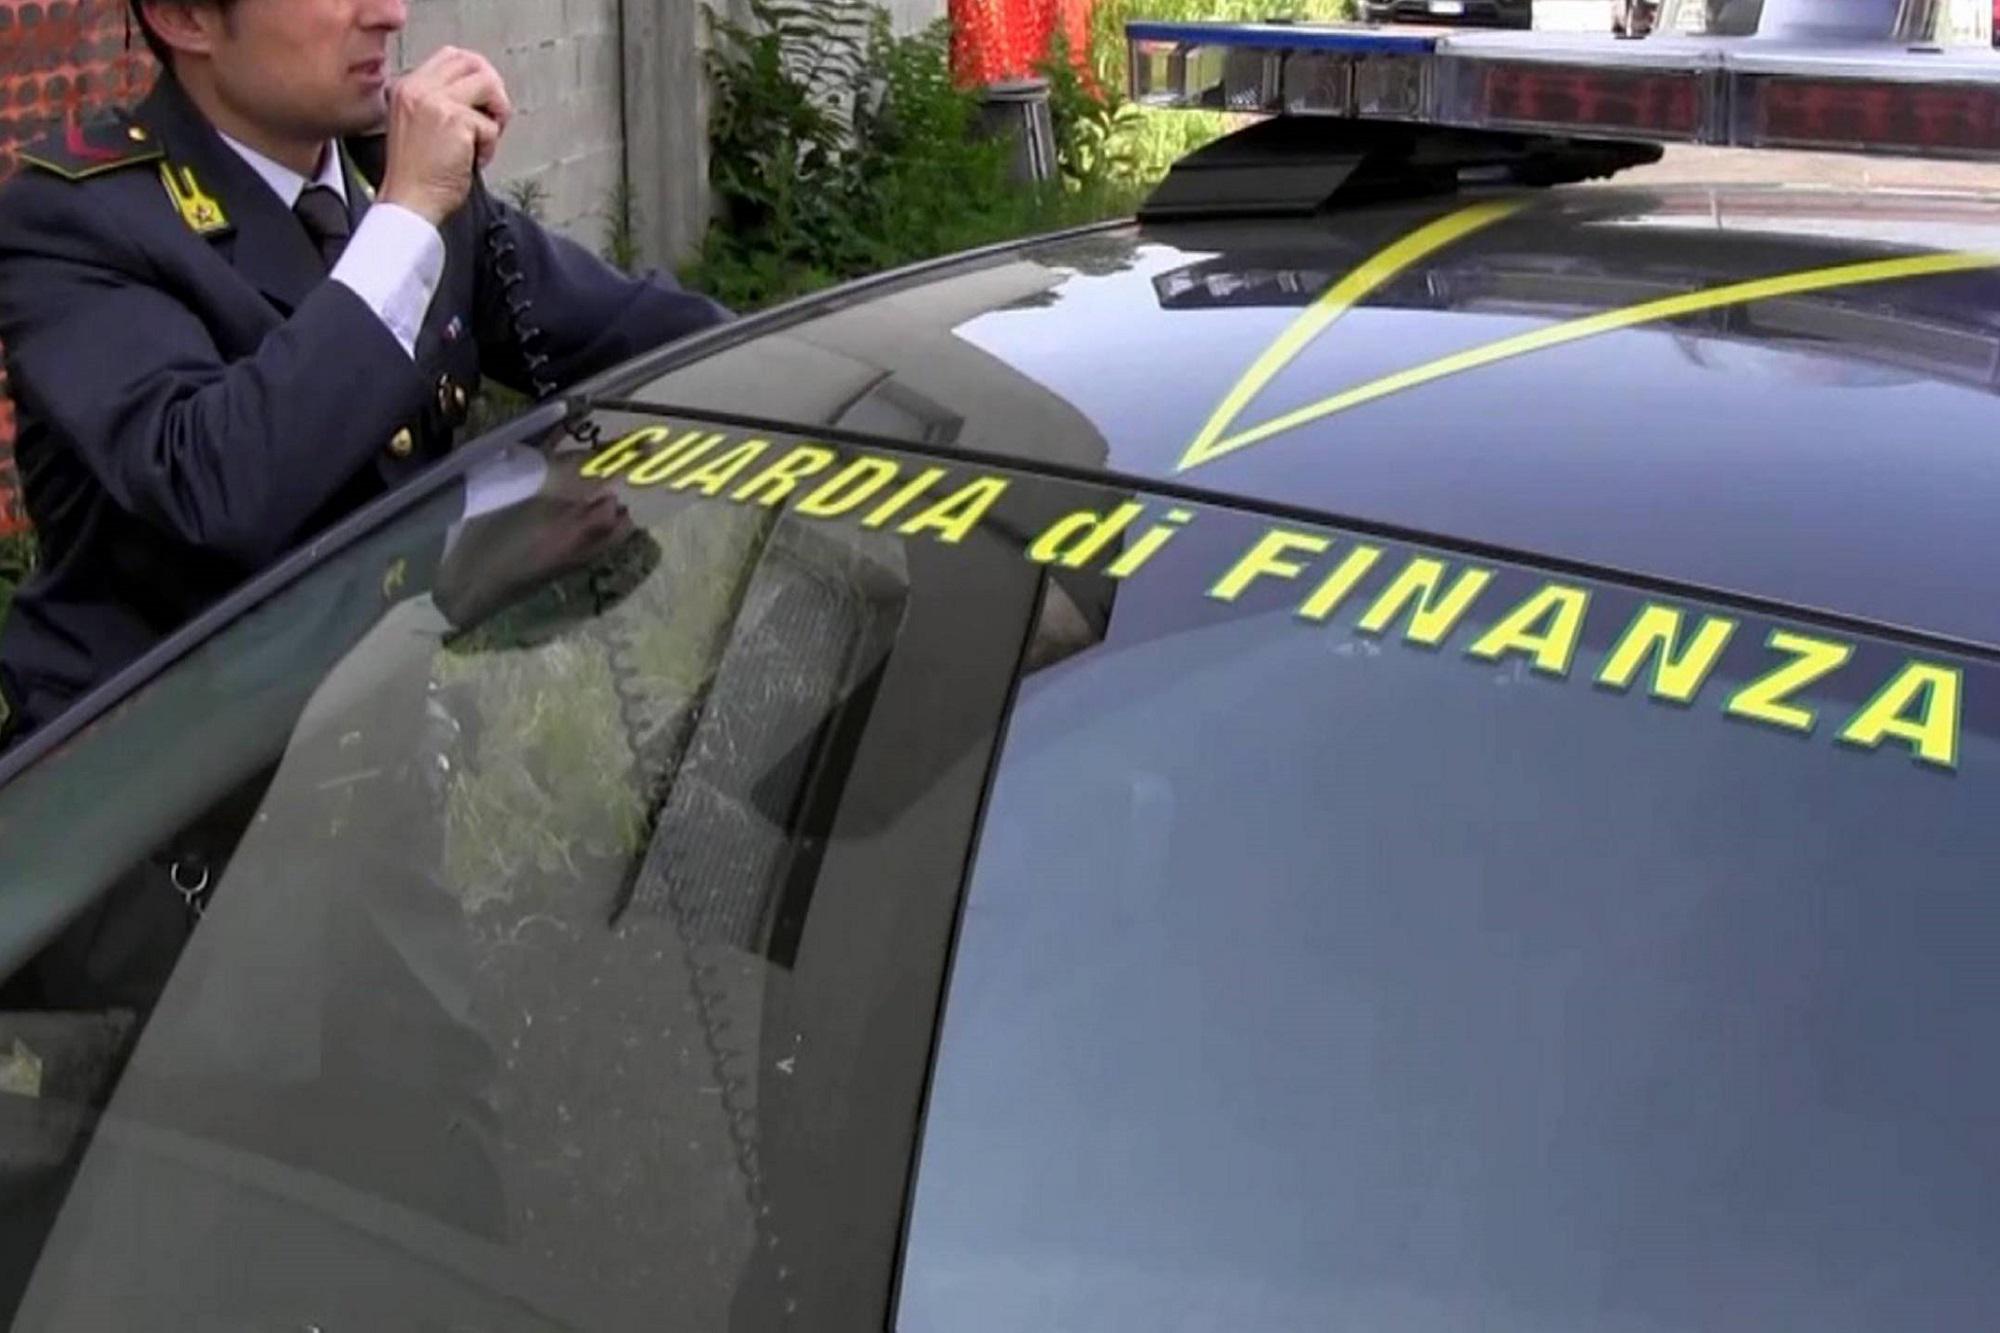 Corruzione - inchiesta procura Milano: arrestato generale dei carabinieri